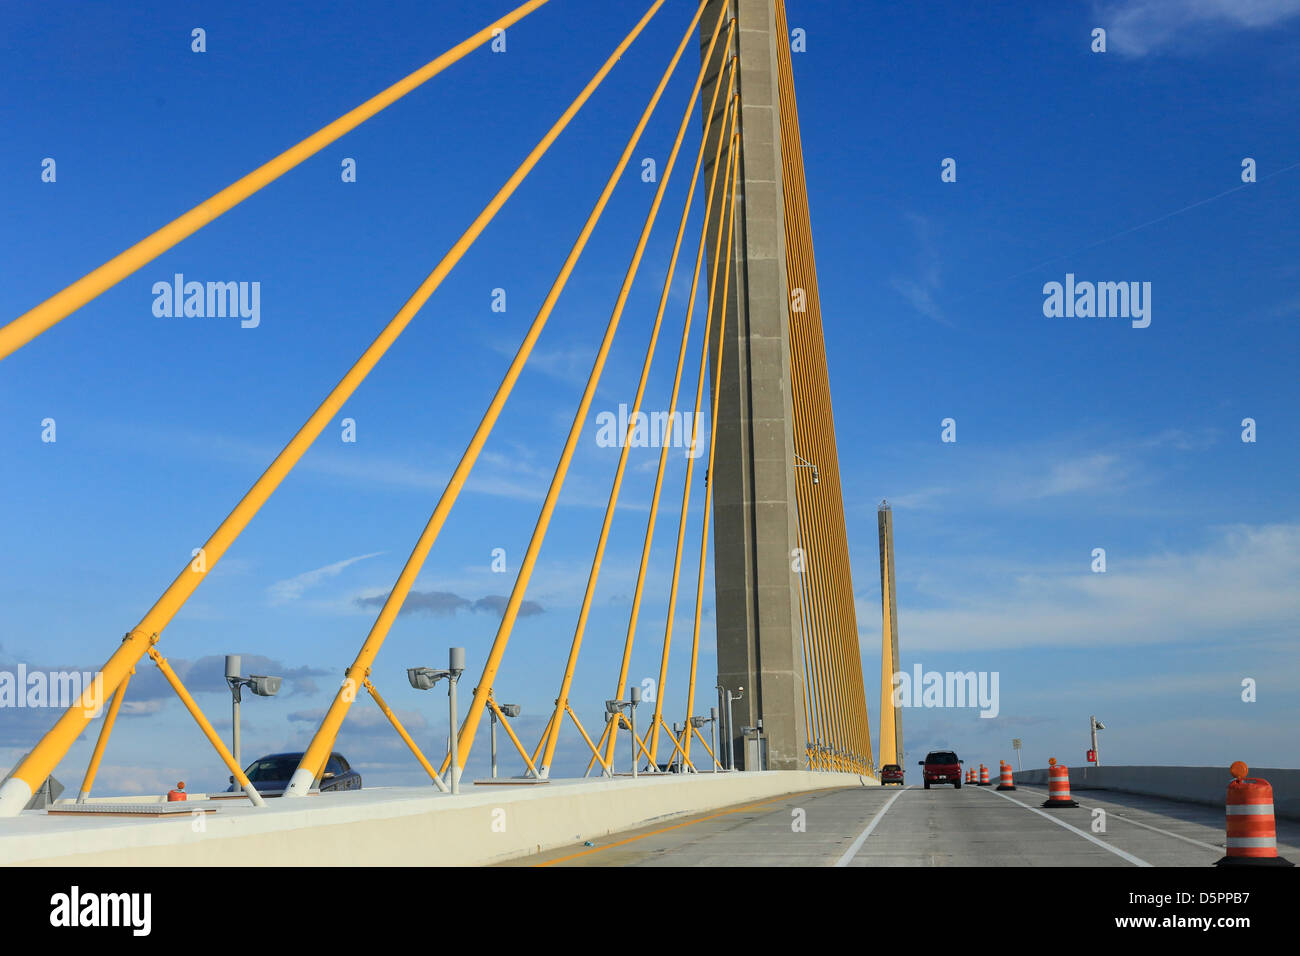 El Bob Graham Sunshine Skyway Bridge es un puente de la Bahía de Tampa, Florida, con un cable principal nos alojamos span Foto de stock